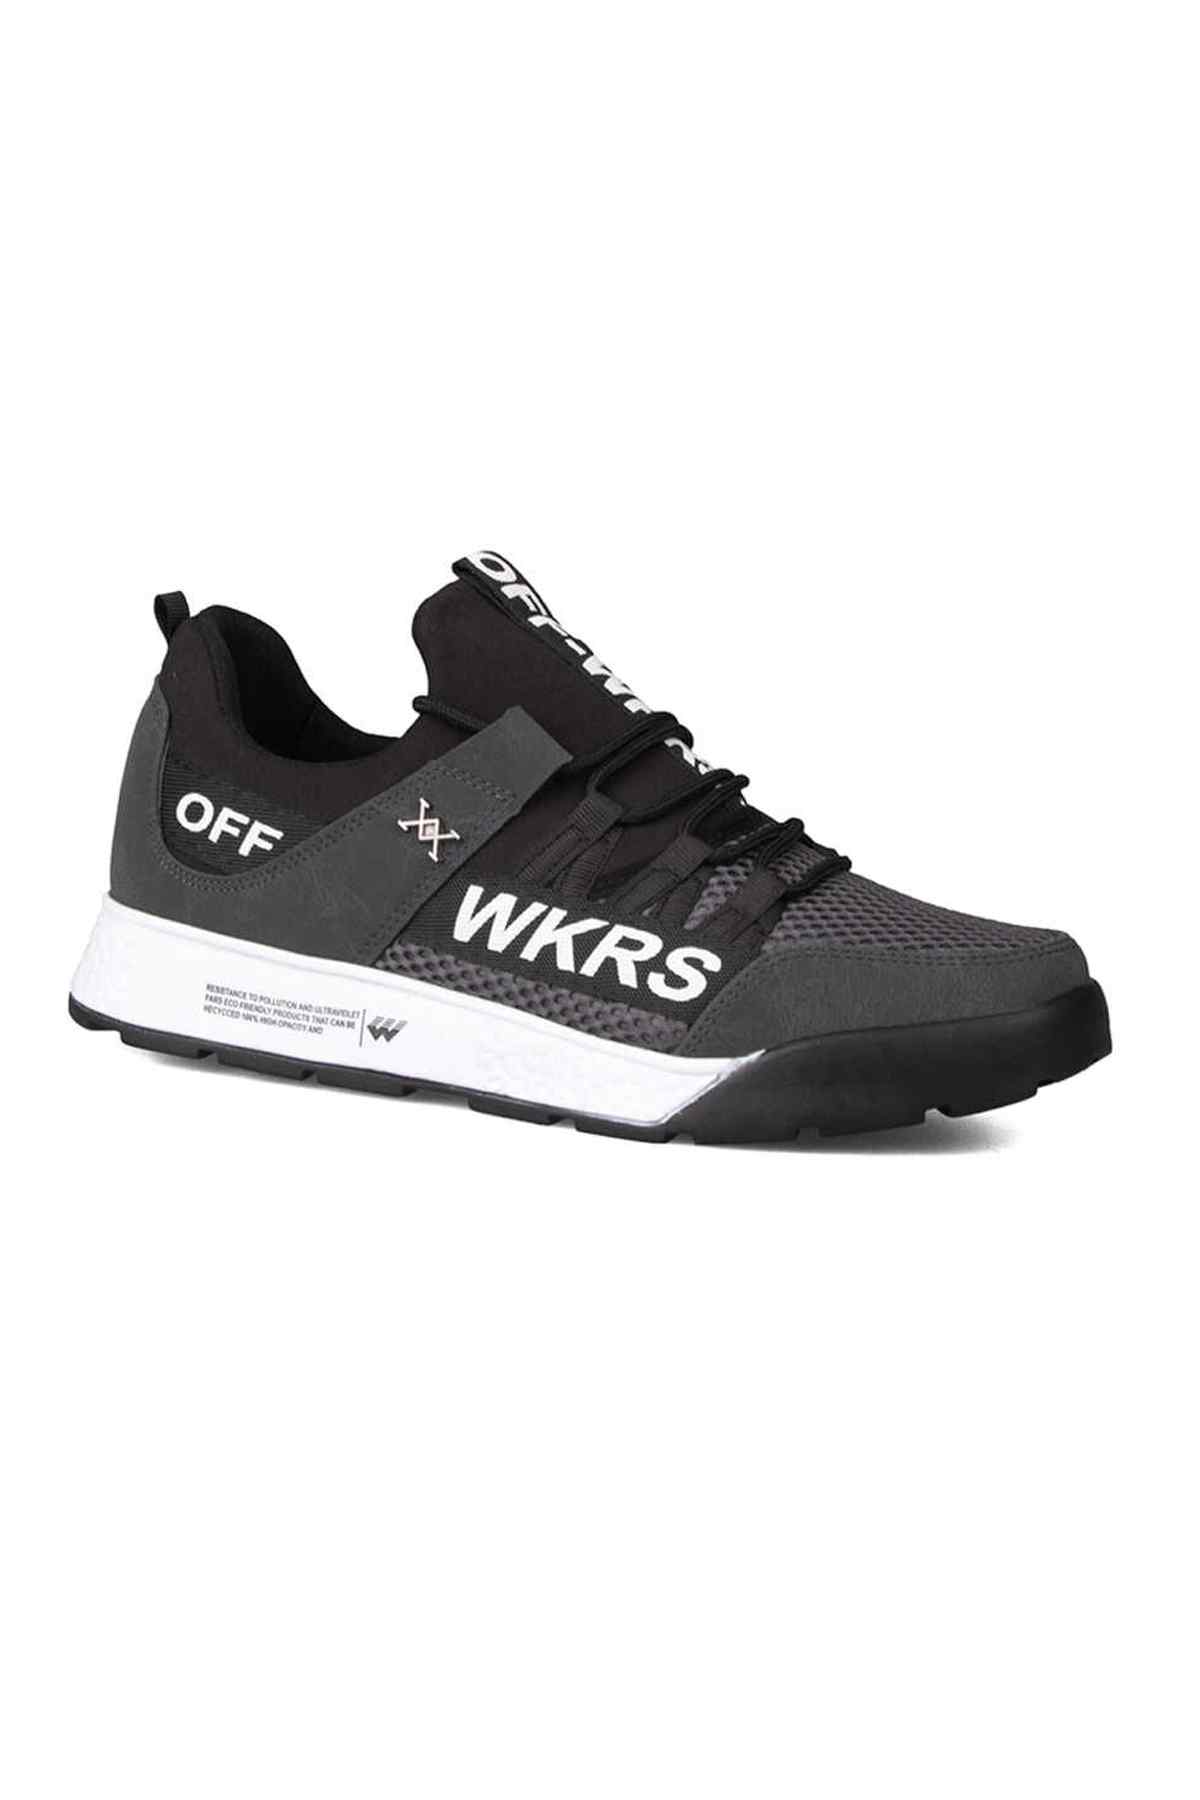 Wickers Erkek Spor Ayakkabı Gri Yazlık Fileli Wkrs 2300